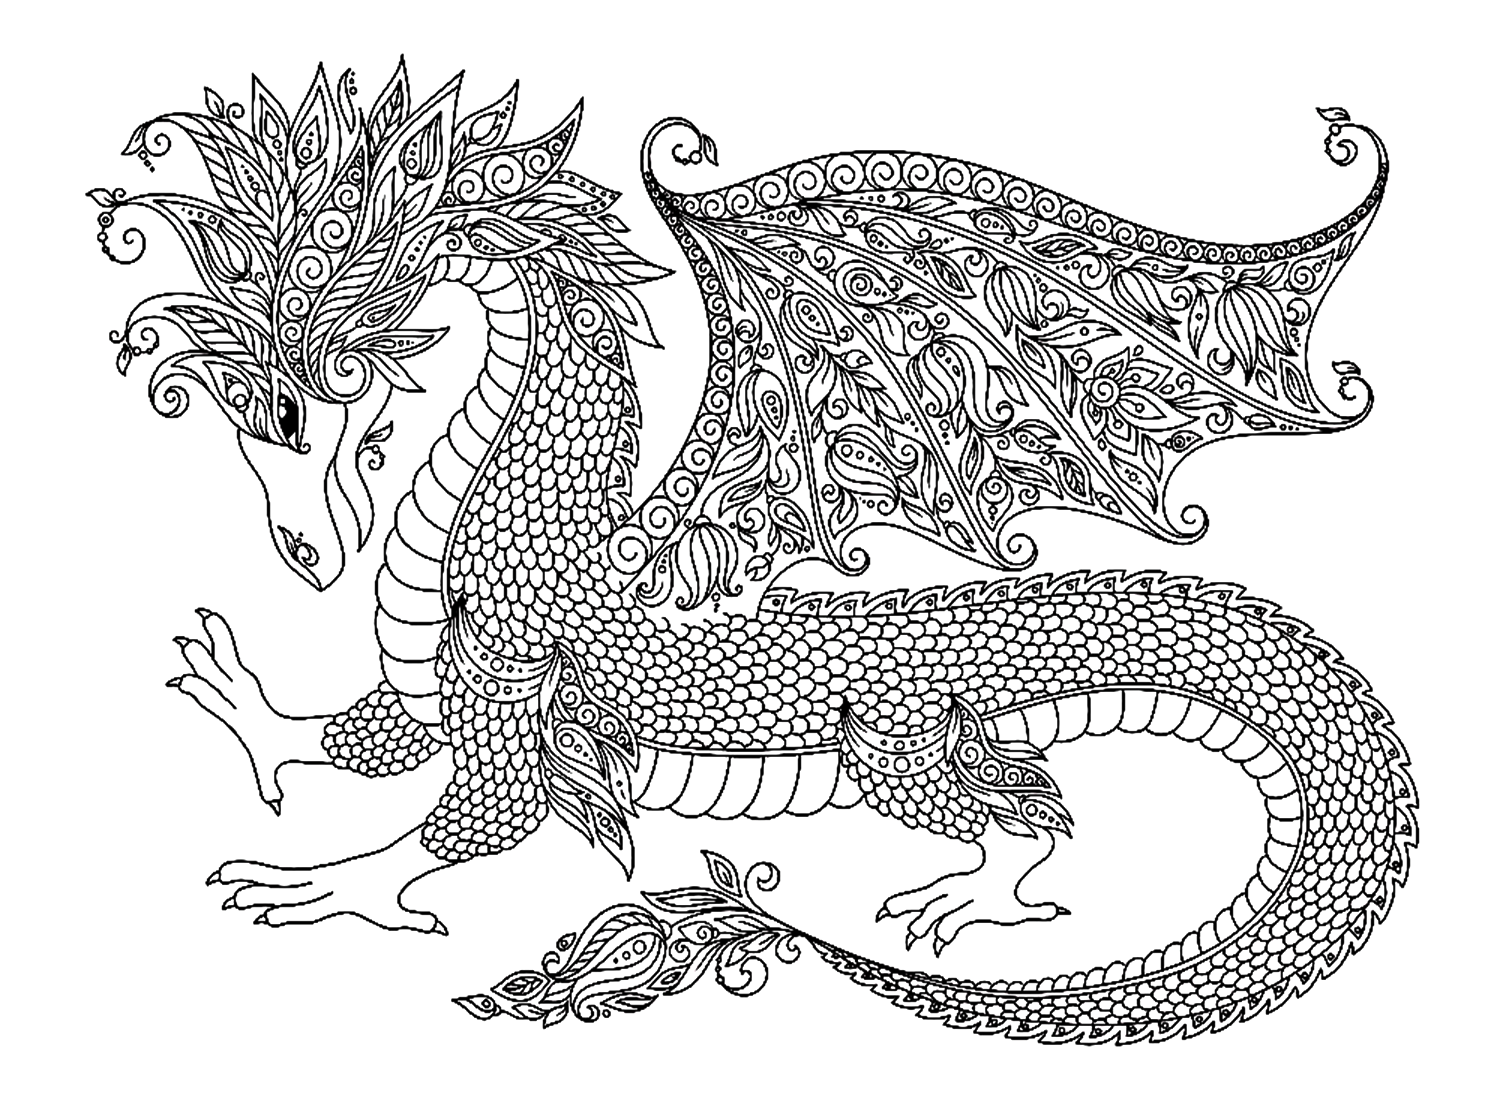 Disegni da colorare di draghi per adulti di Dragon